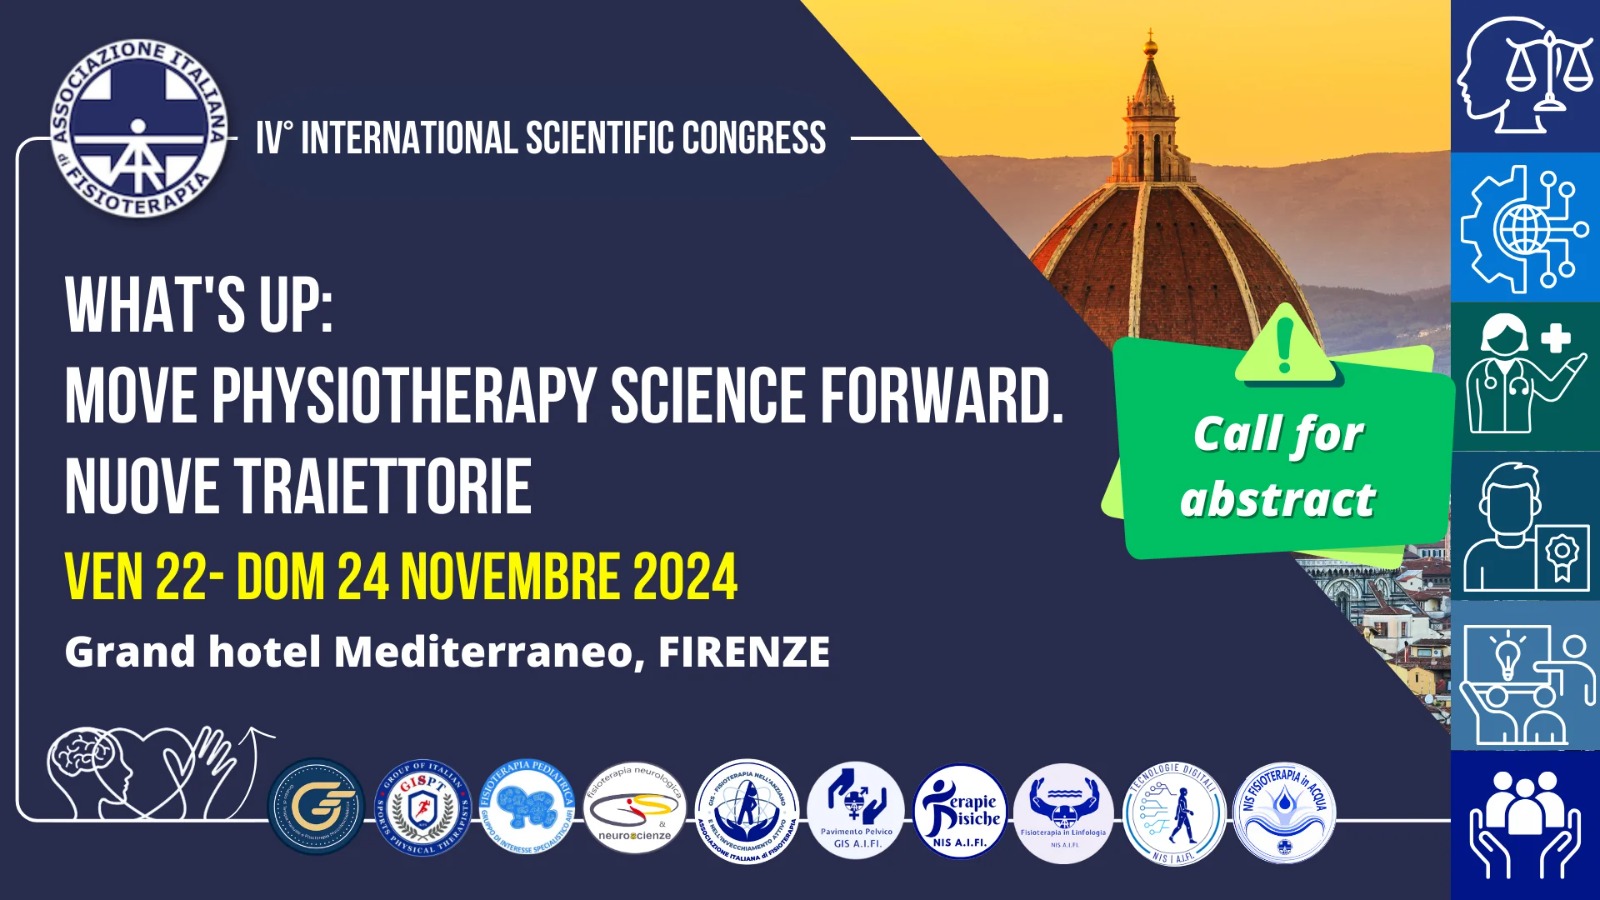 Call for Abstract: IV° Congresso Internazionale Scientifico AIFI 2024